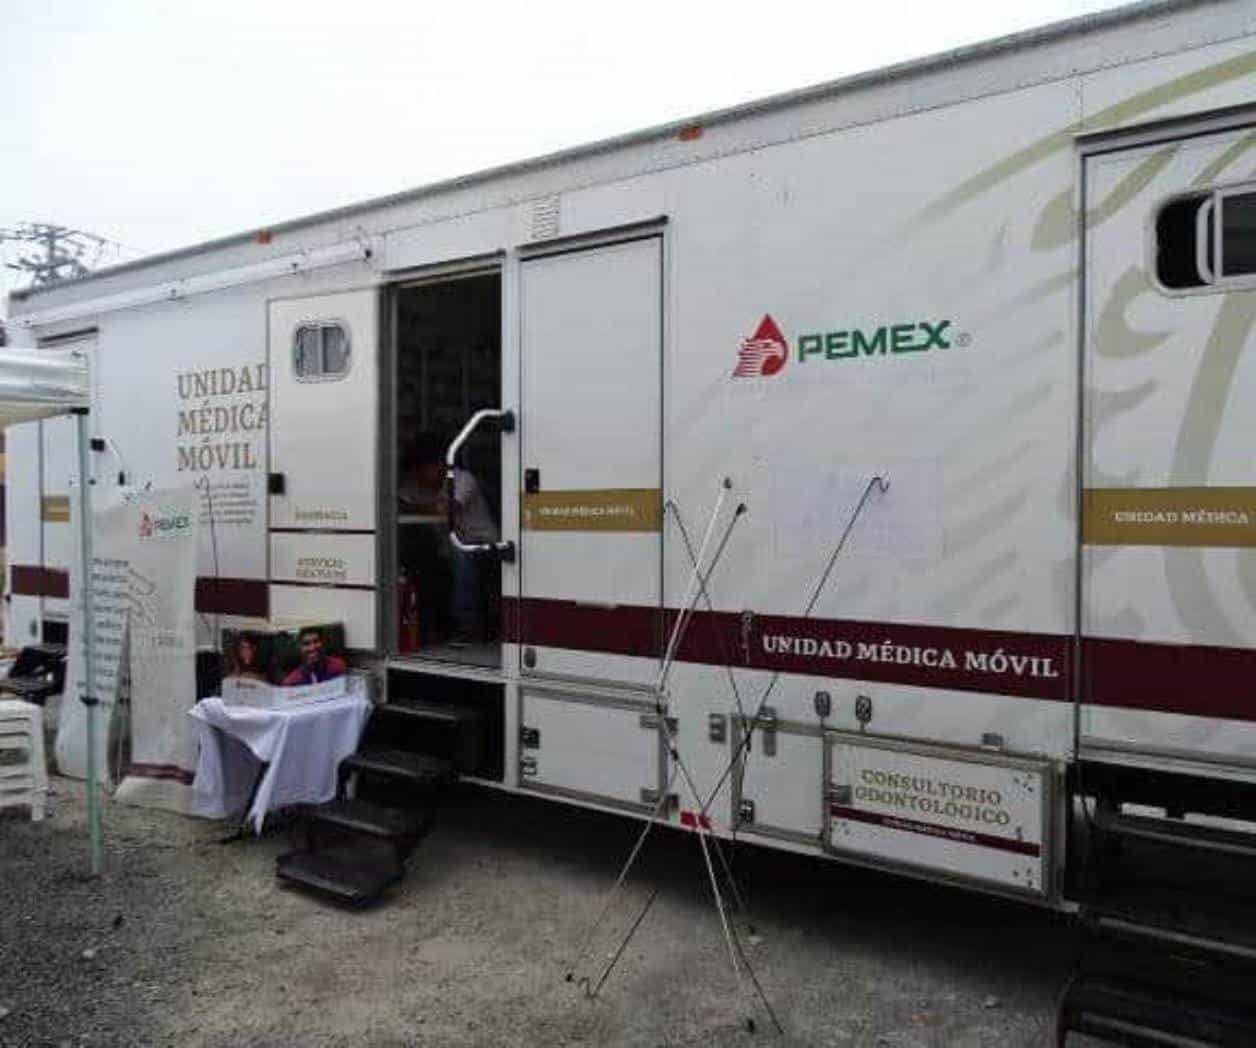 Visita la Villa Unidad Médica de Pemex, hoy y mañana